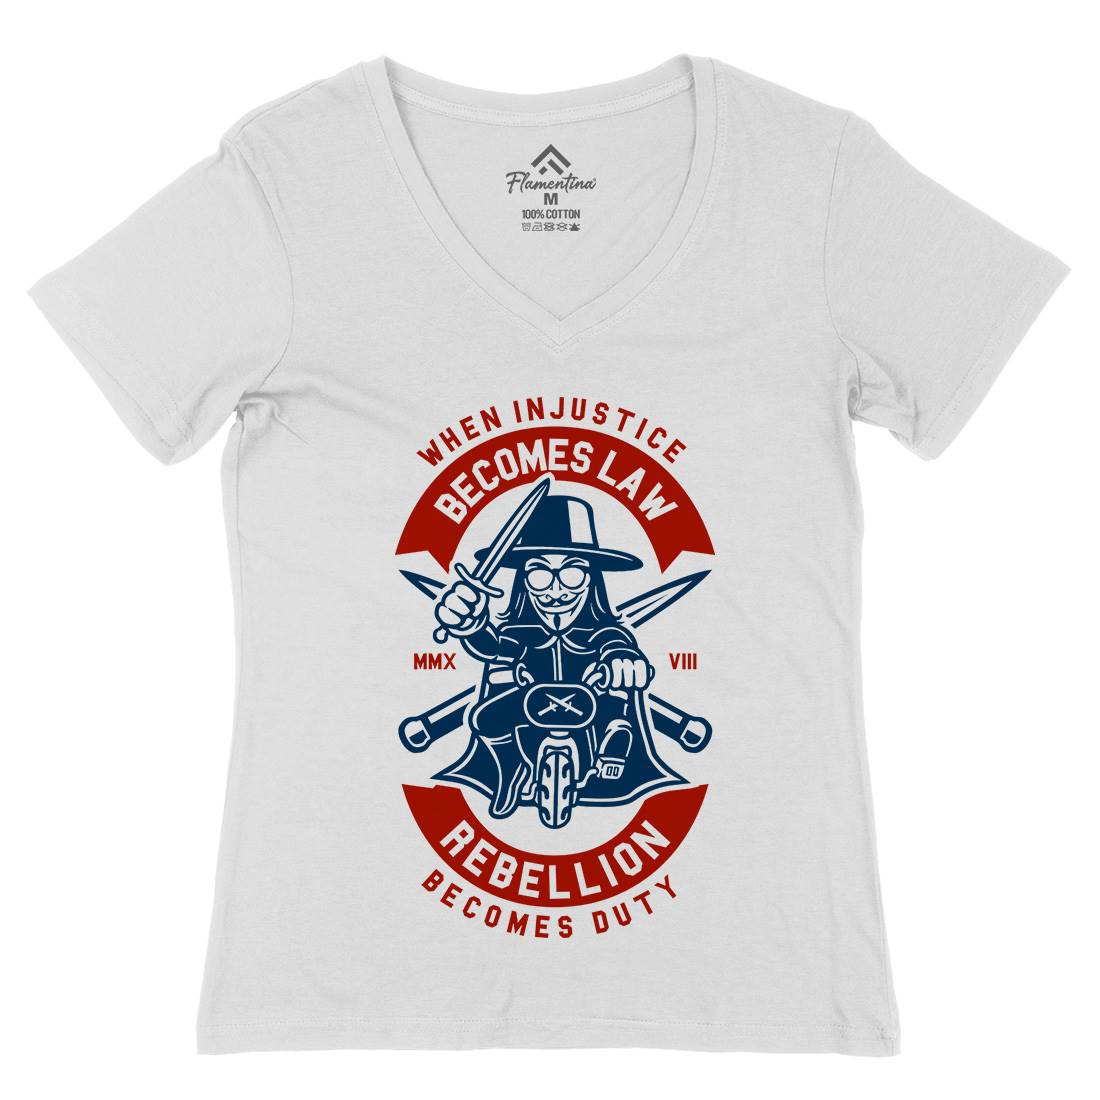 Rebellion Womens Organic V-Neck T-Shirt Illuminati A267